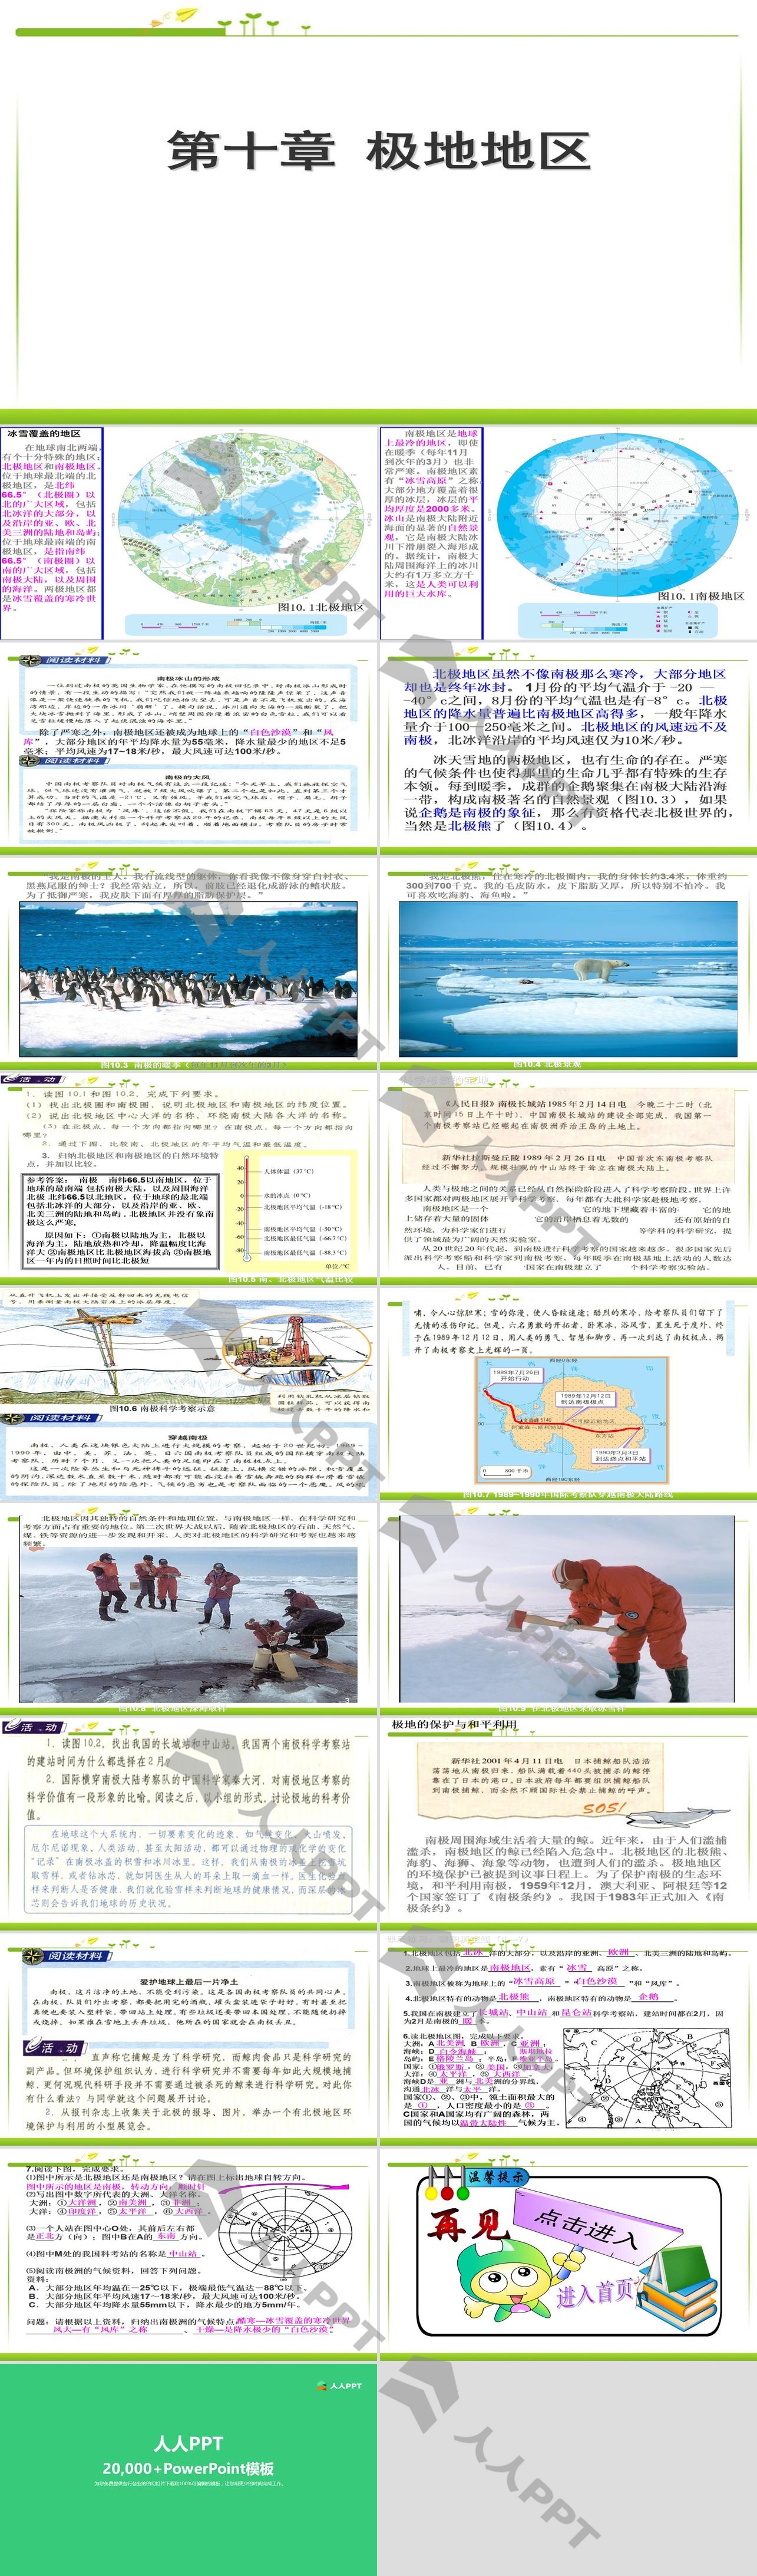 《极地地区》PPT课件下载长图